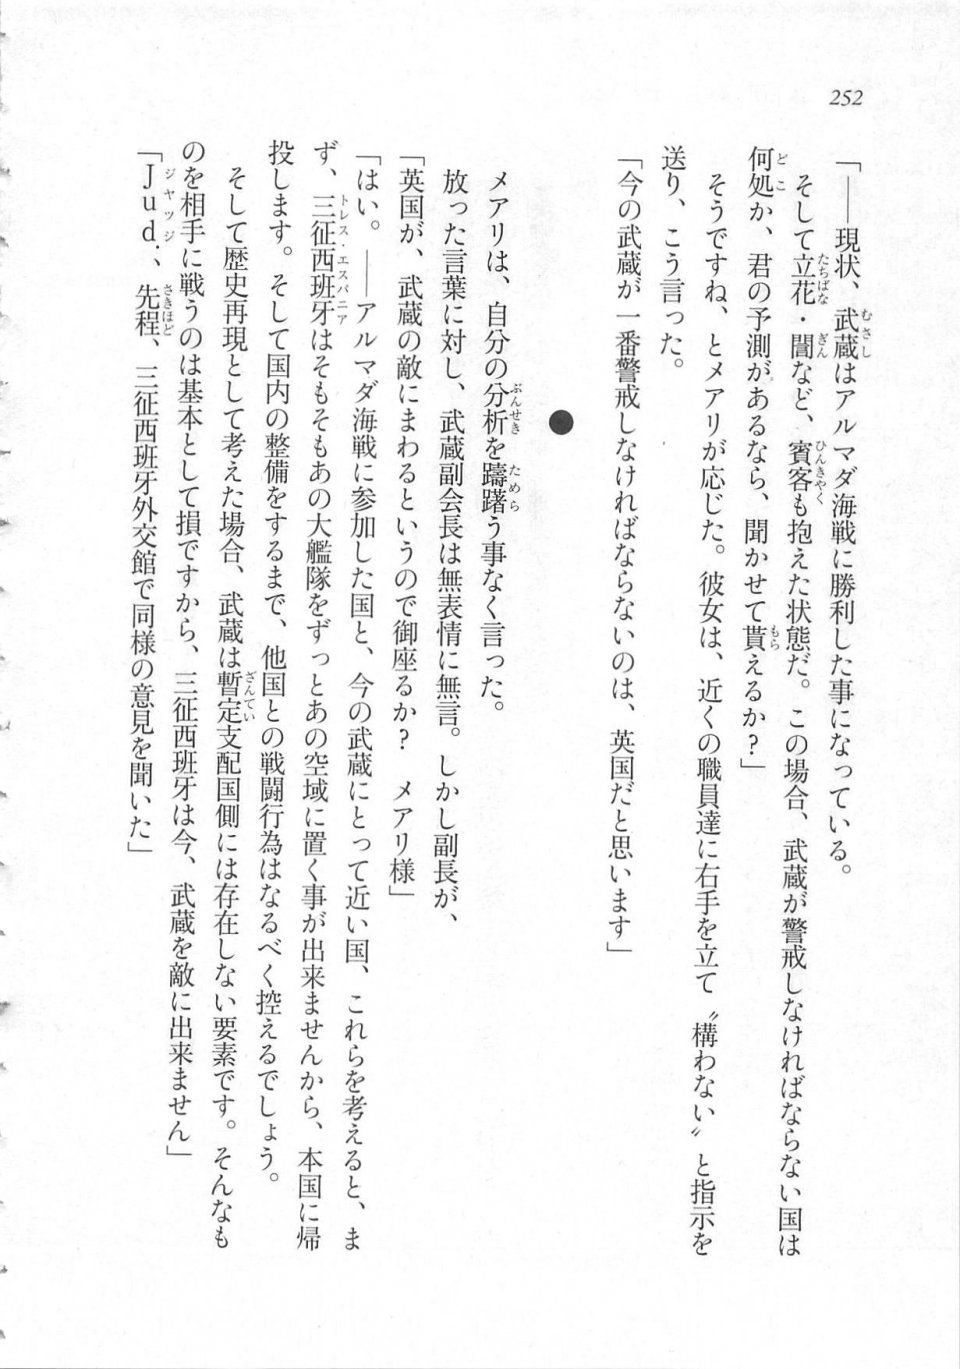 Kyoukai Senjou no Horizon LN Sidestory Vol 3 - Photo #256